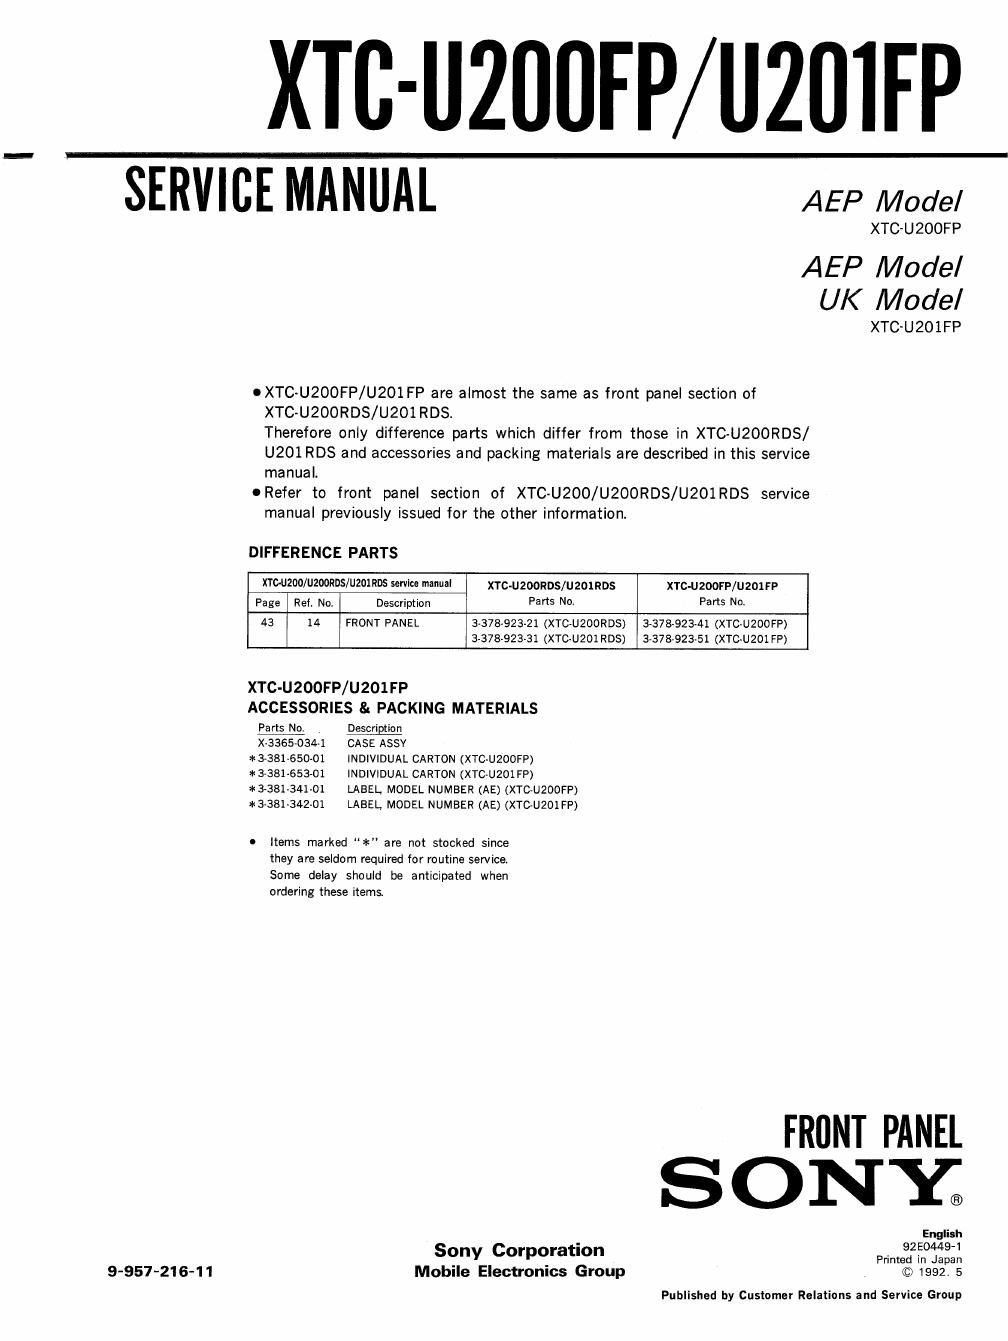 sony xtc u 201 fp service manual